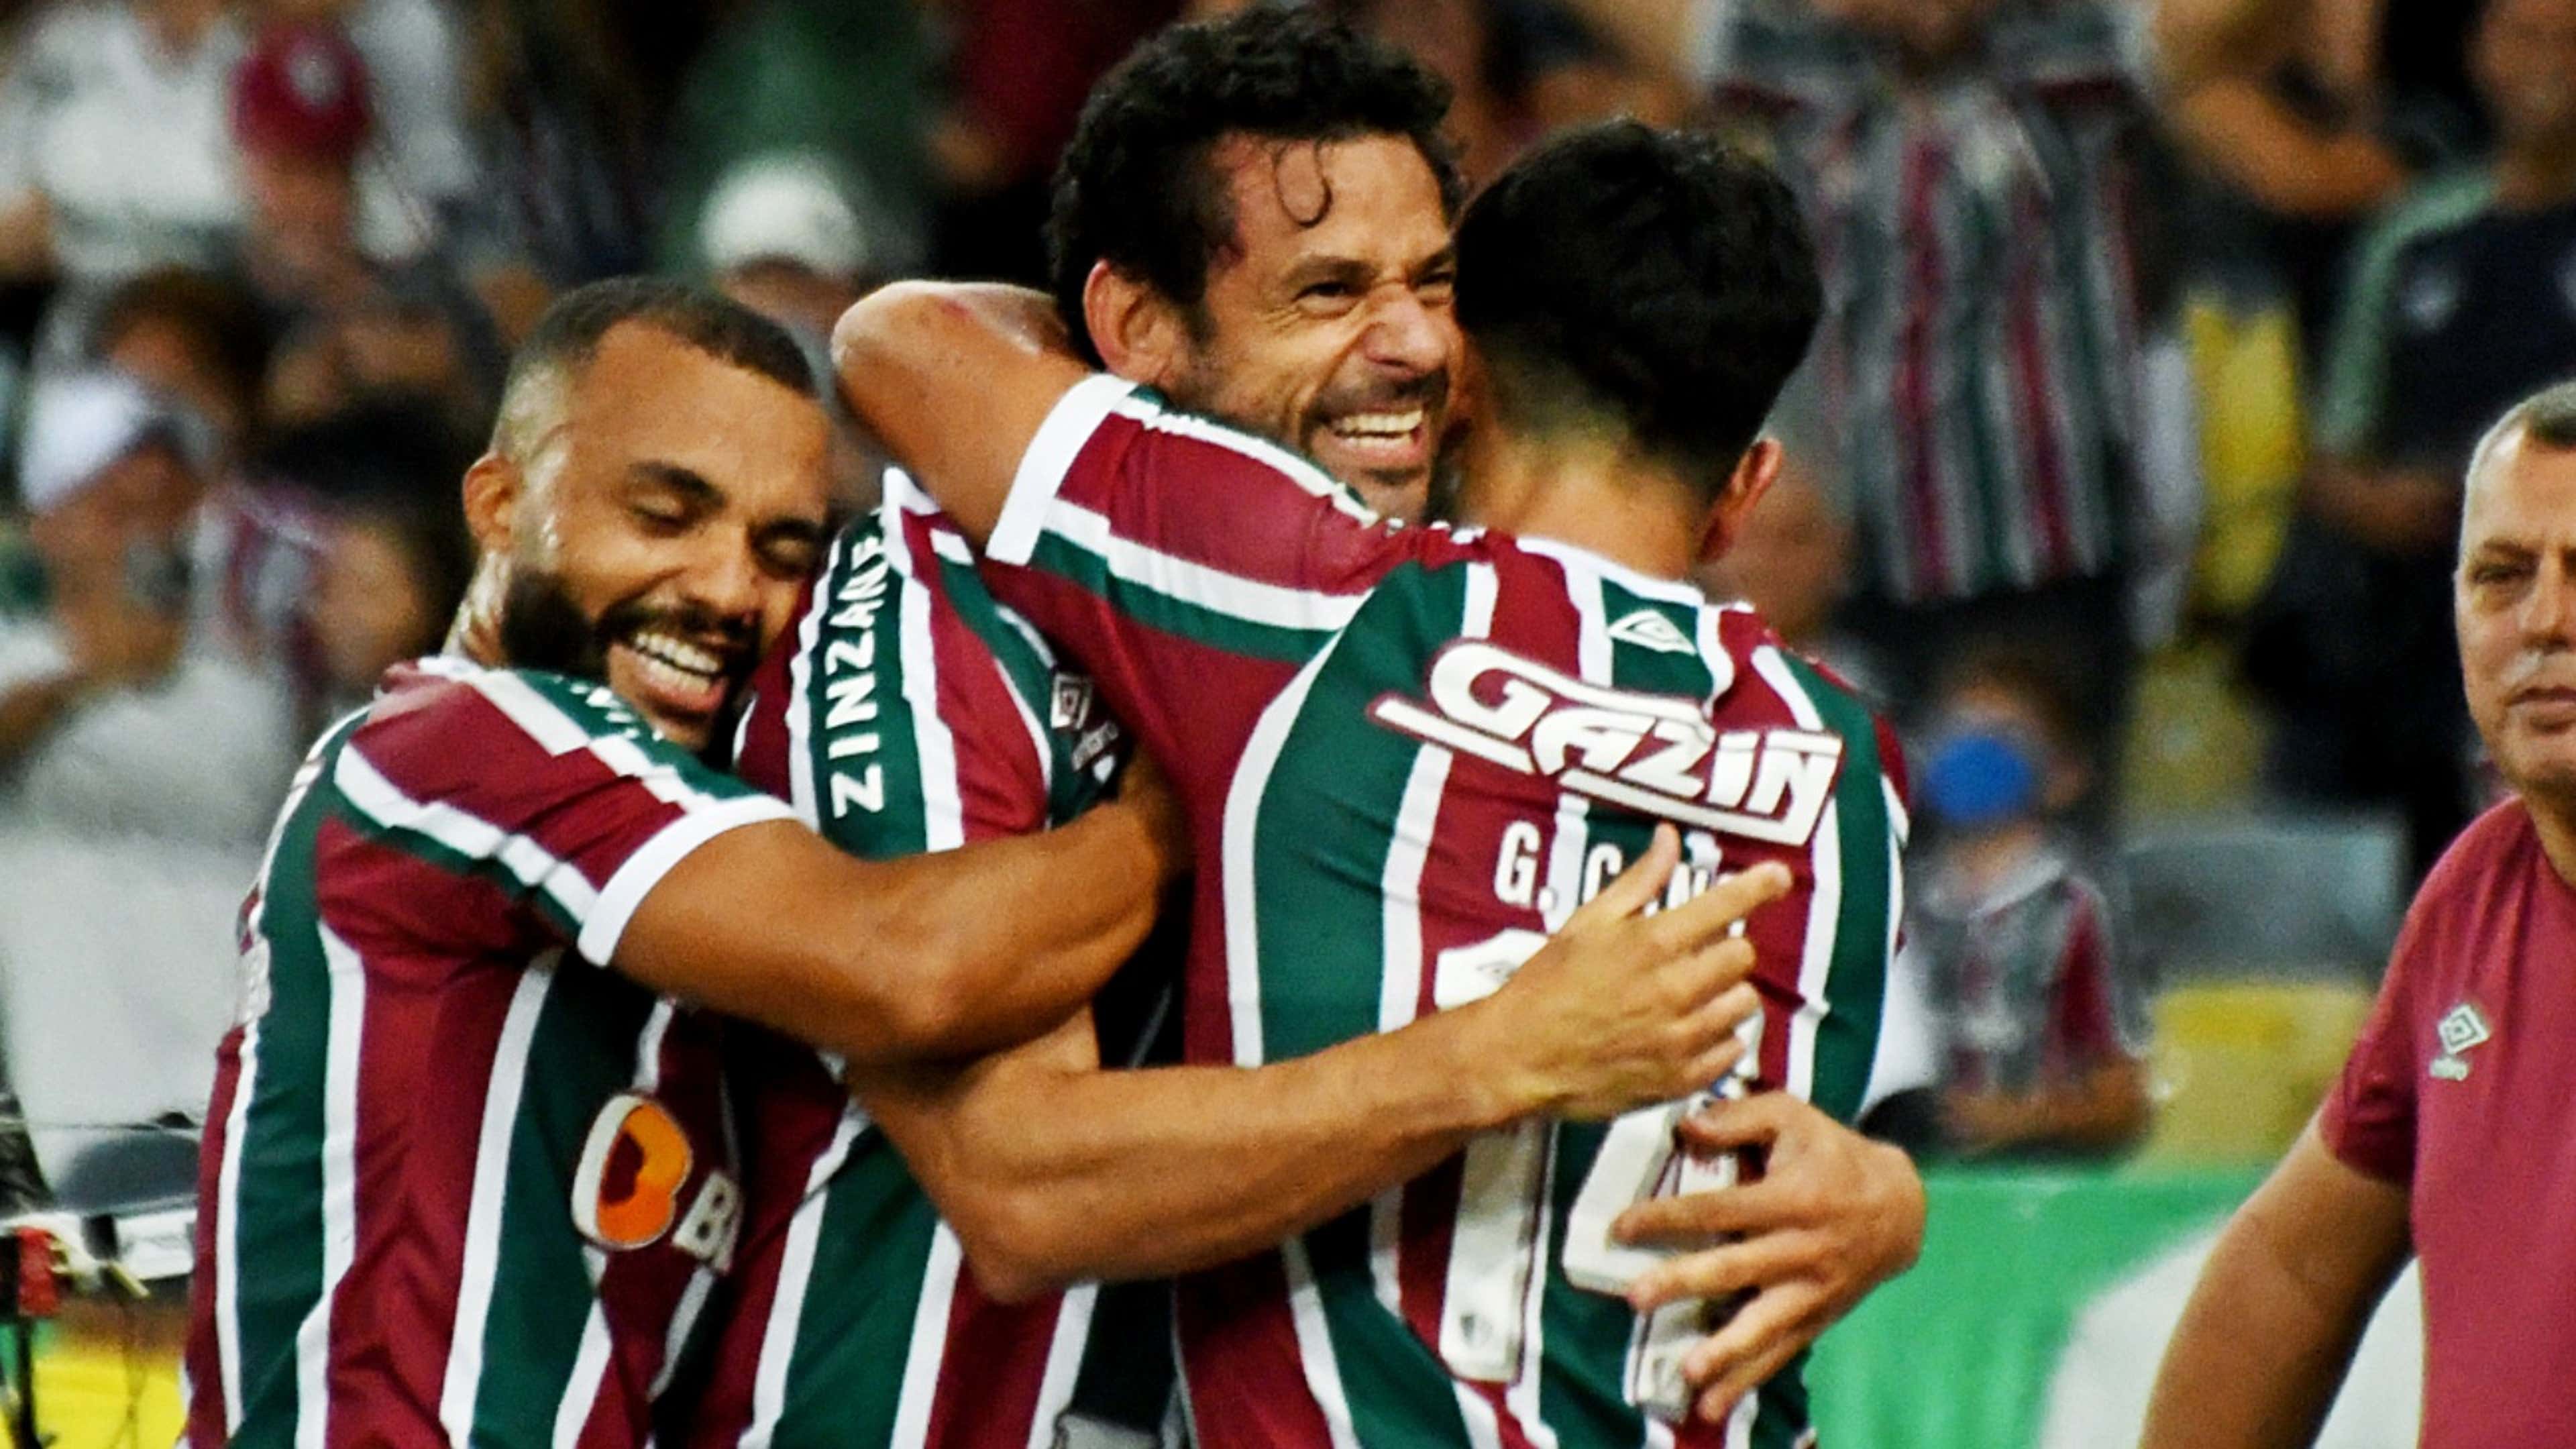 Que horas é o jogo do Fluminense hoje na Sul-Americana? (26/04)